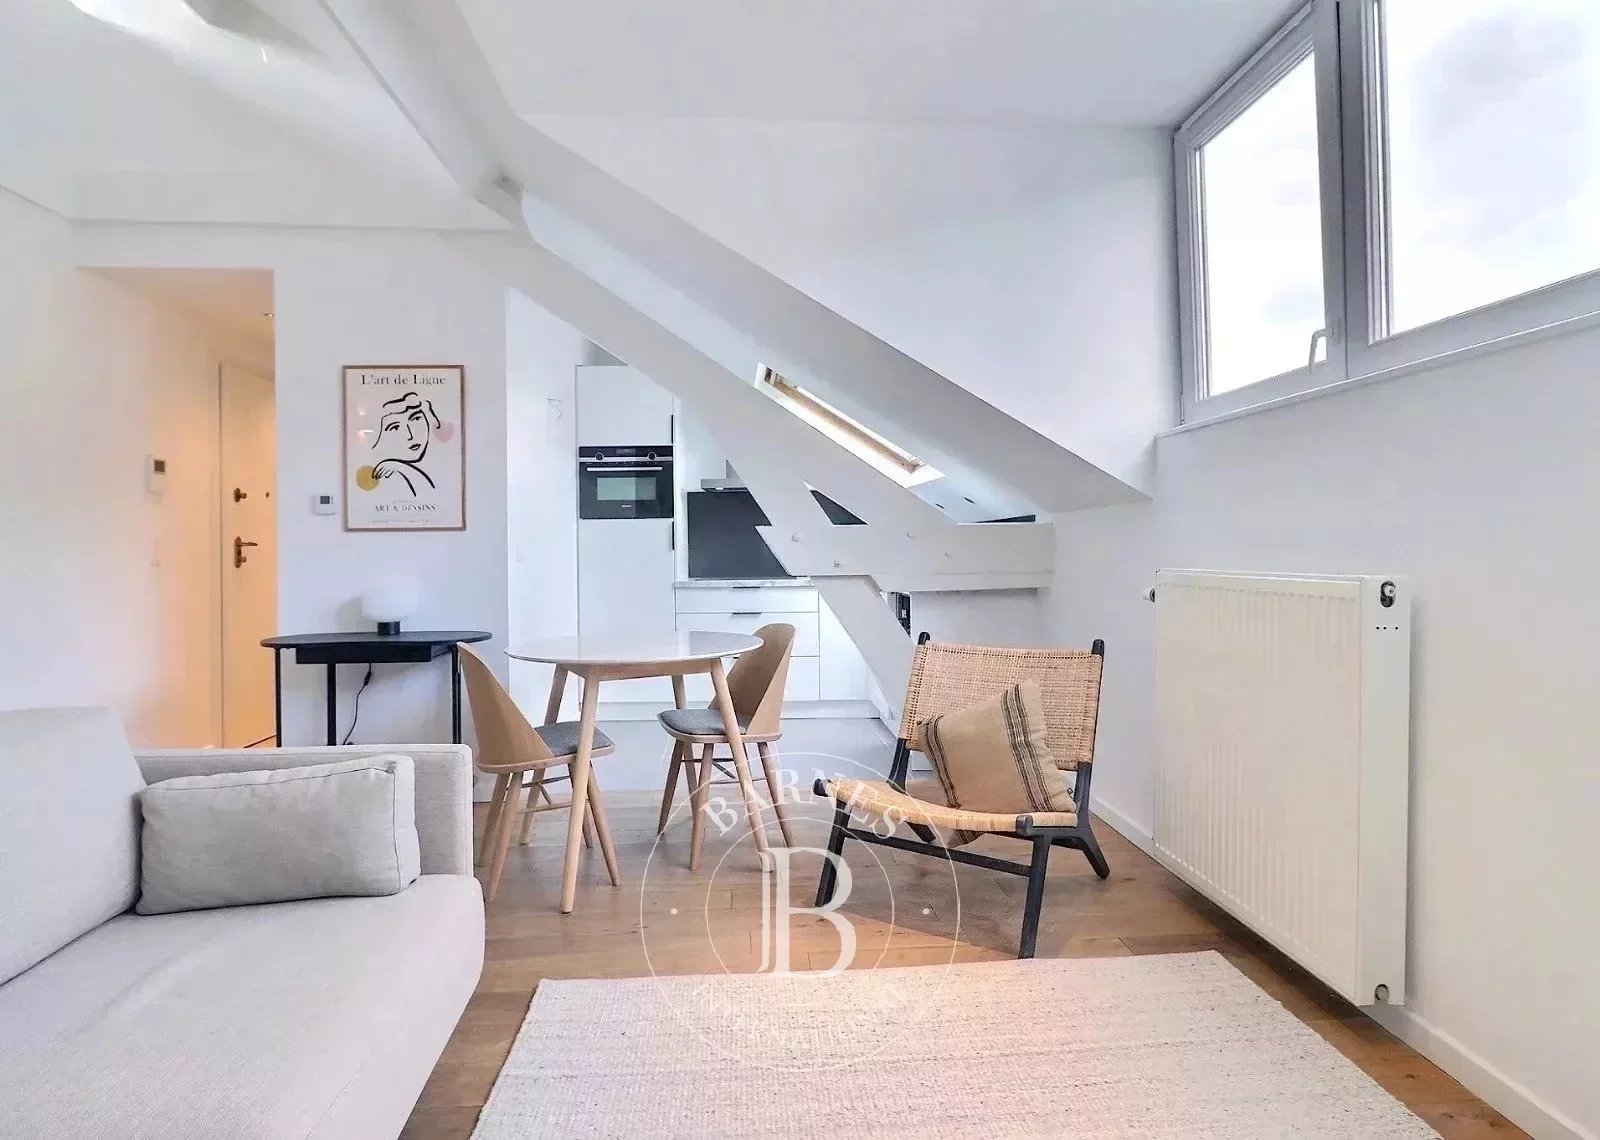 Boulevard Adolphe Max – Appartement 1ch neuf et meublé + mezzanine